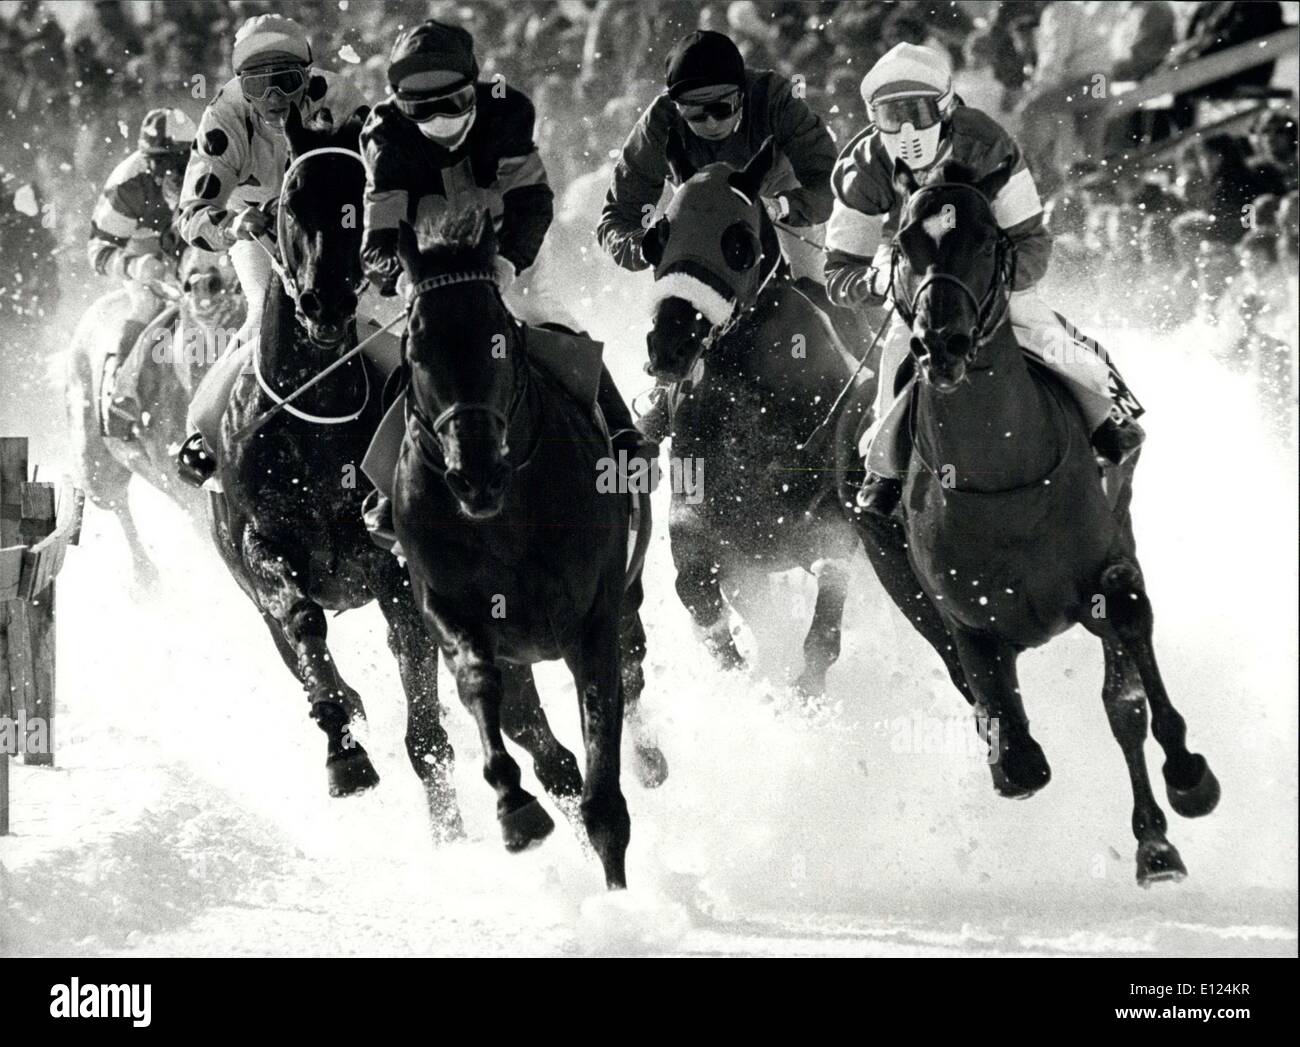 27 febbraio 1986 - corse di cavalli sulla neve: la famosa Svizzera winter sports resort San Moritz è ben noto per la sua tradizionale corse di cavalli sul lago ghiacciato di St. Moritz. Ci sono gare normali e anche la pericolosa 'Skijoring'' dove uno sciatore è puled da un cavallo. La nostra immagine mostra un'impressione di gara. Foto Stock